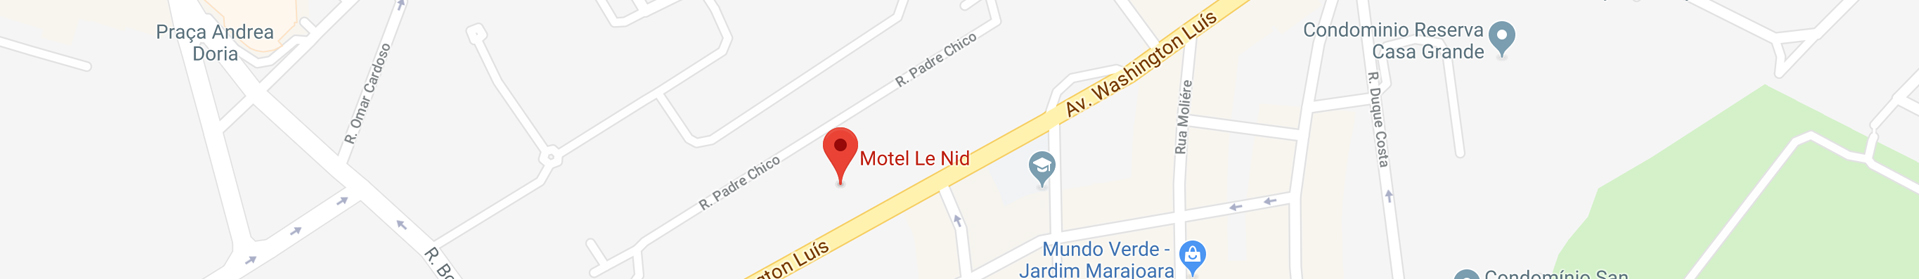 Mapa com a um pin vermelho na localização do Le Nid Motel 